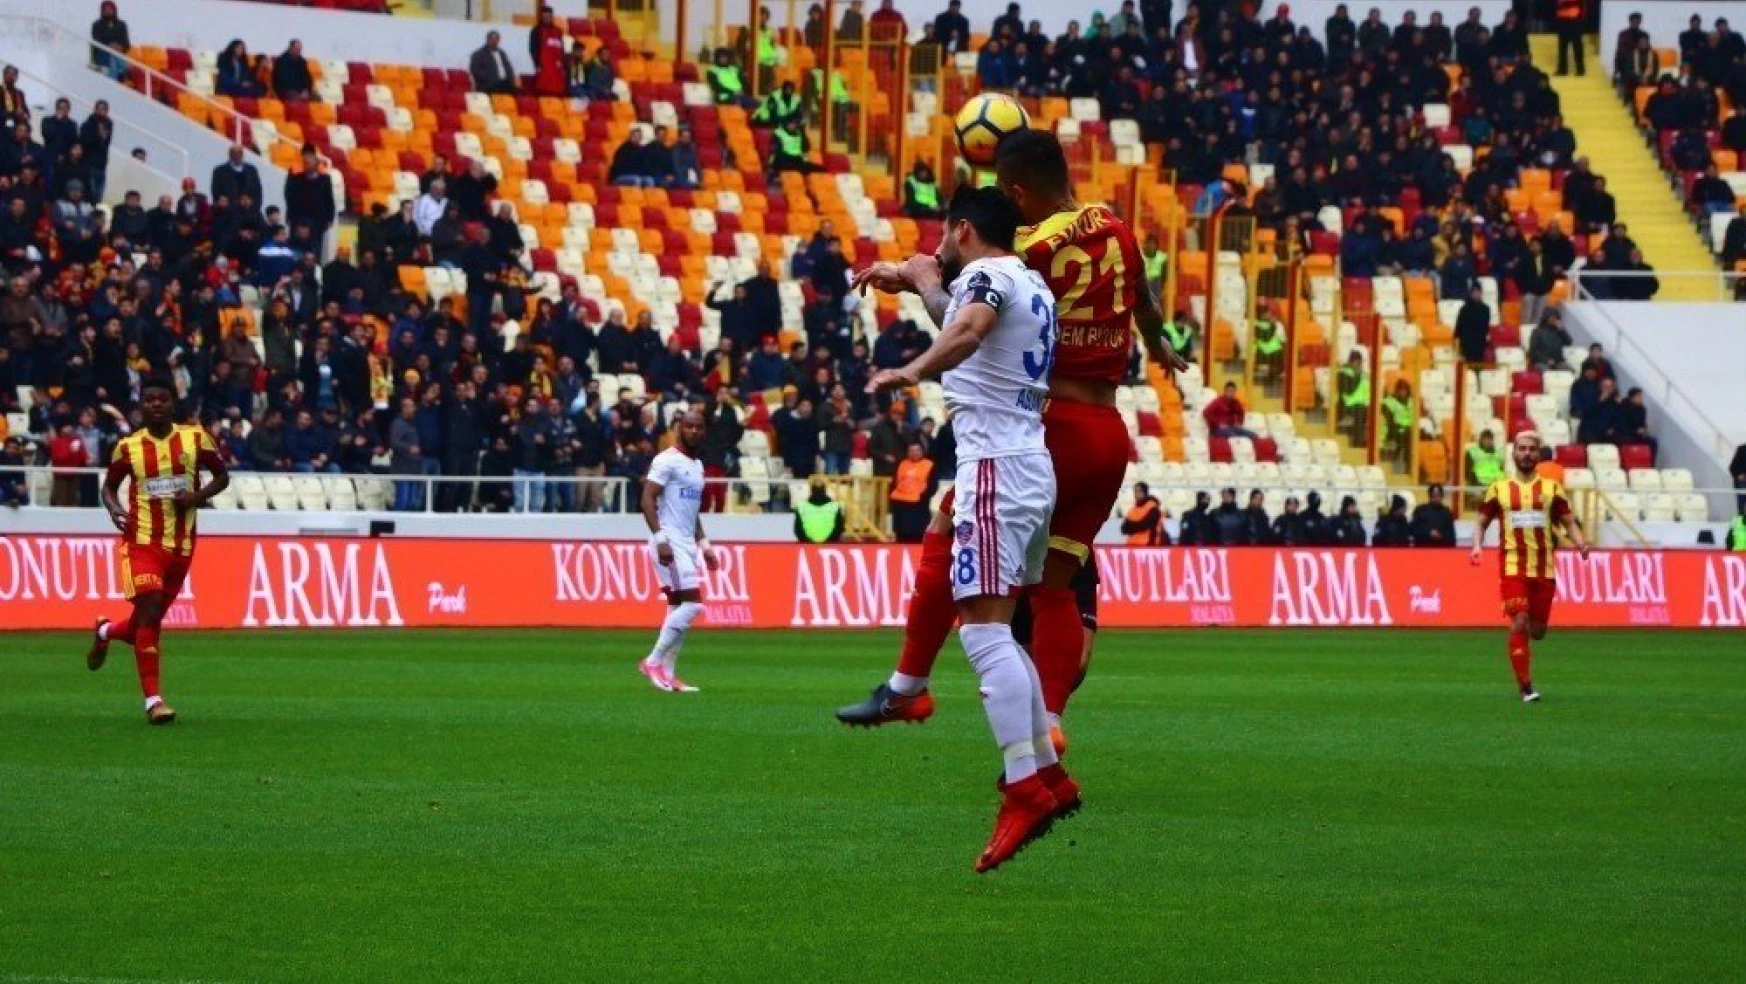 Spor Toto Süper Lig: Evkur Yeni Malatyaspor: 1 - Kardemir Karabükspor: 0 (İlk yarı)
